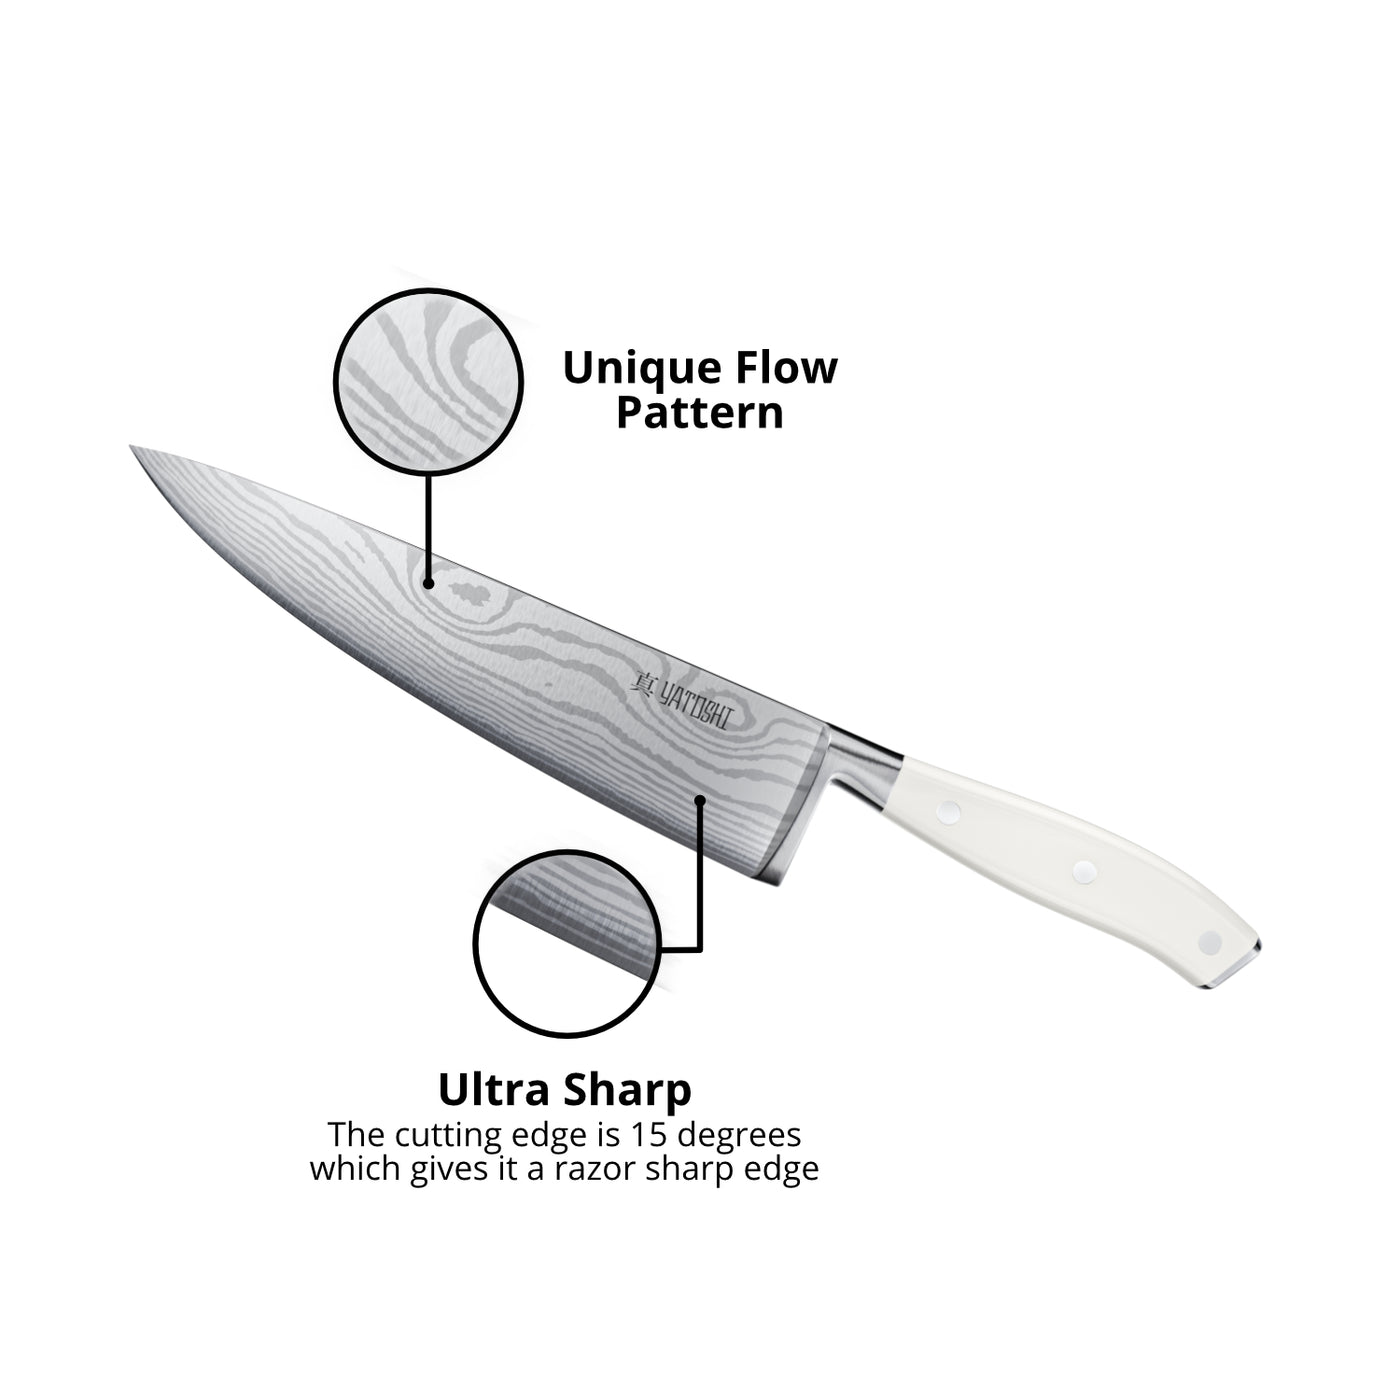  Yatoshi 7 Knife Set - Pro Kitchen Knife Set Ultra